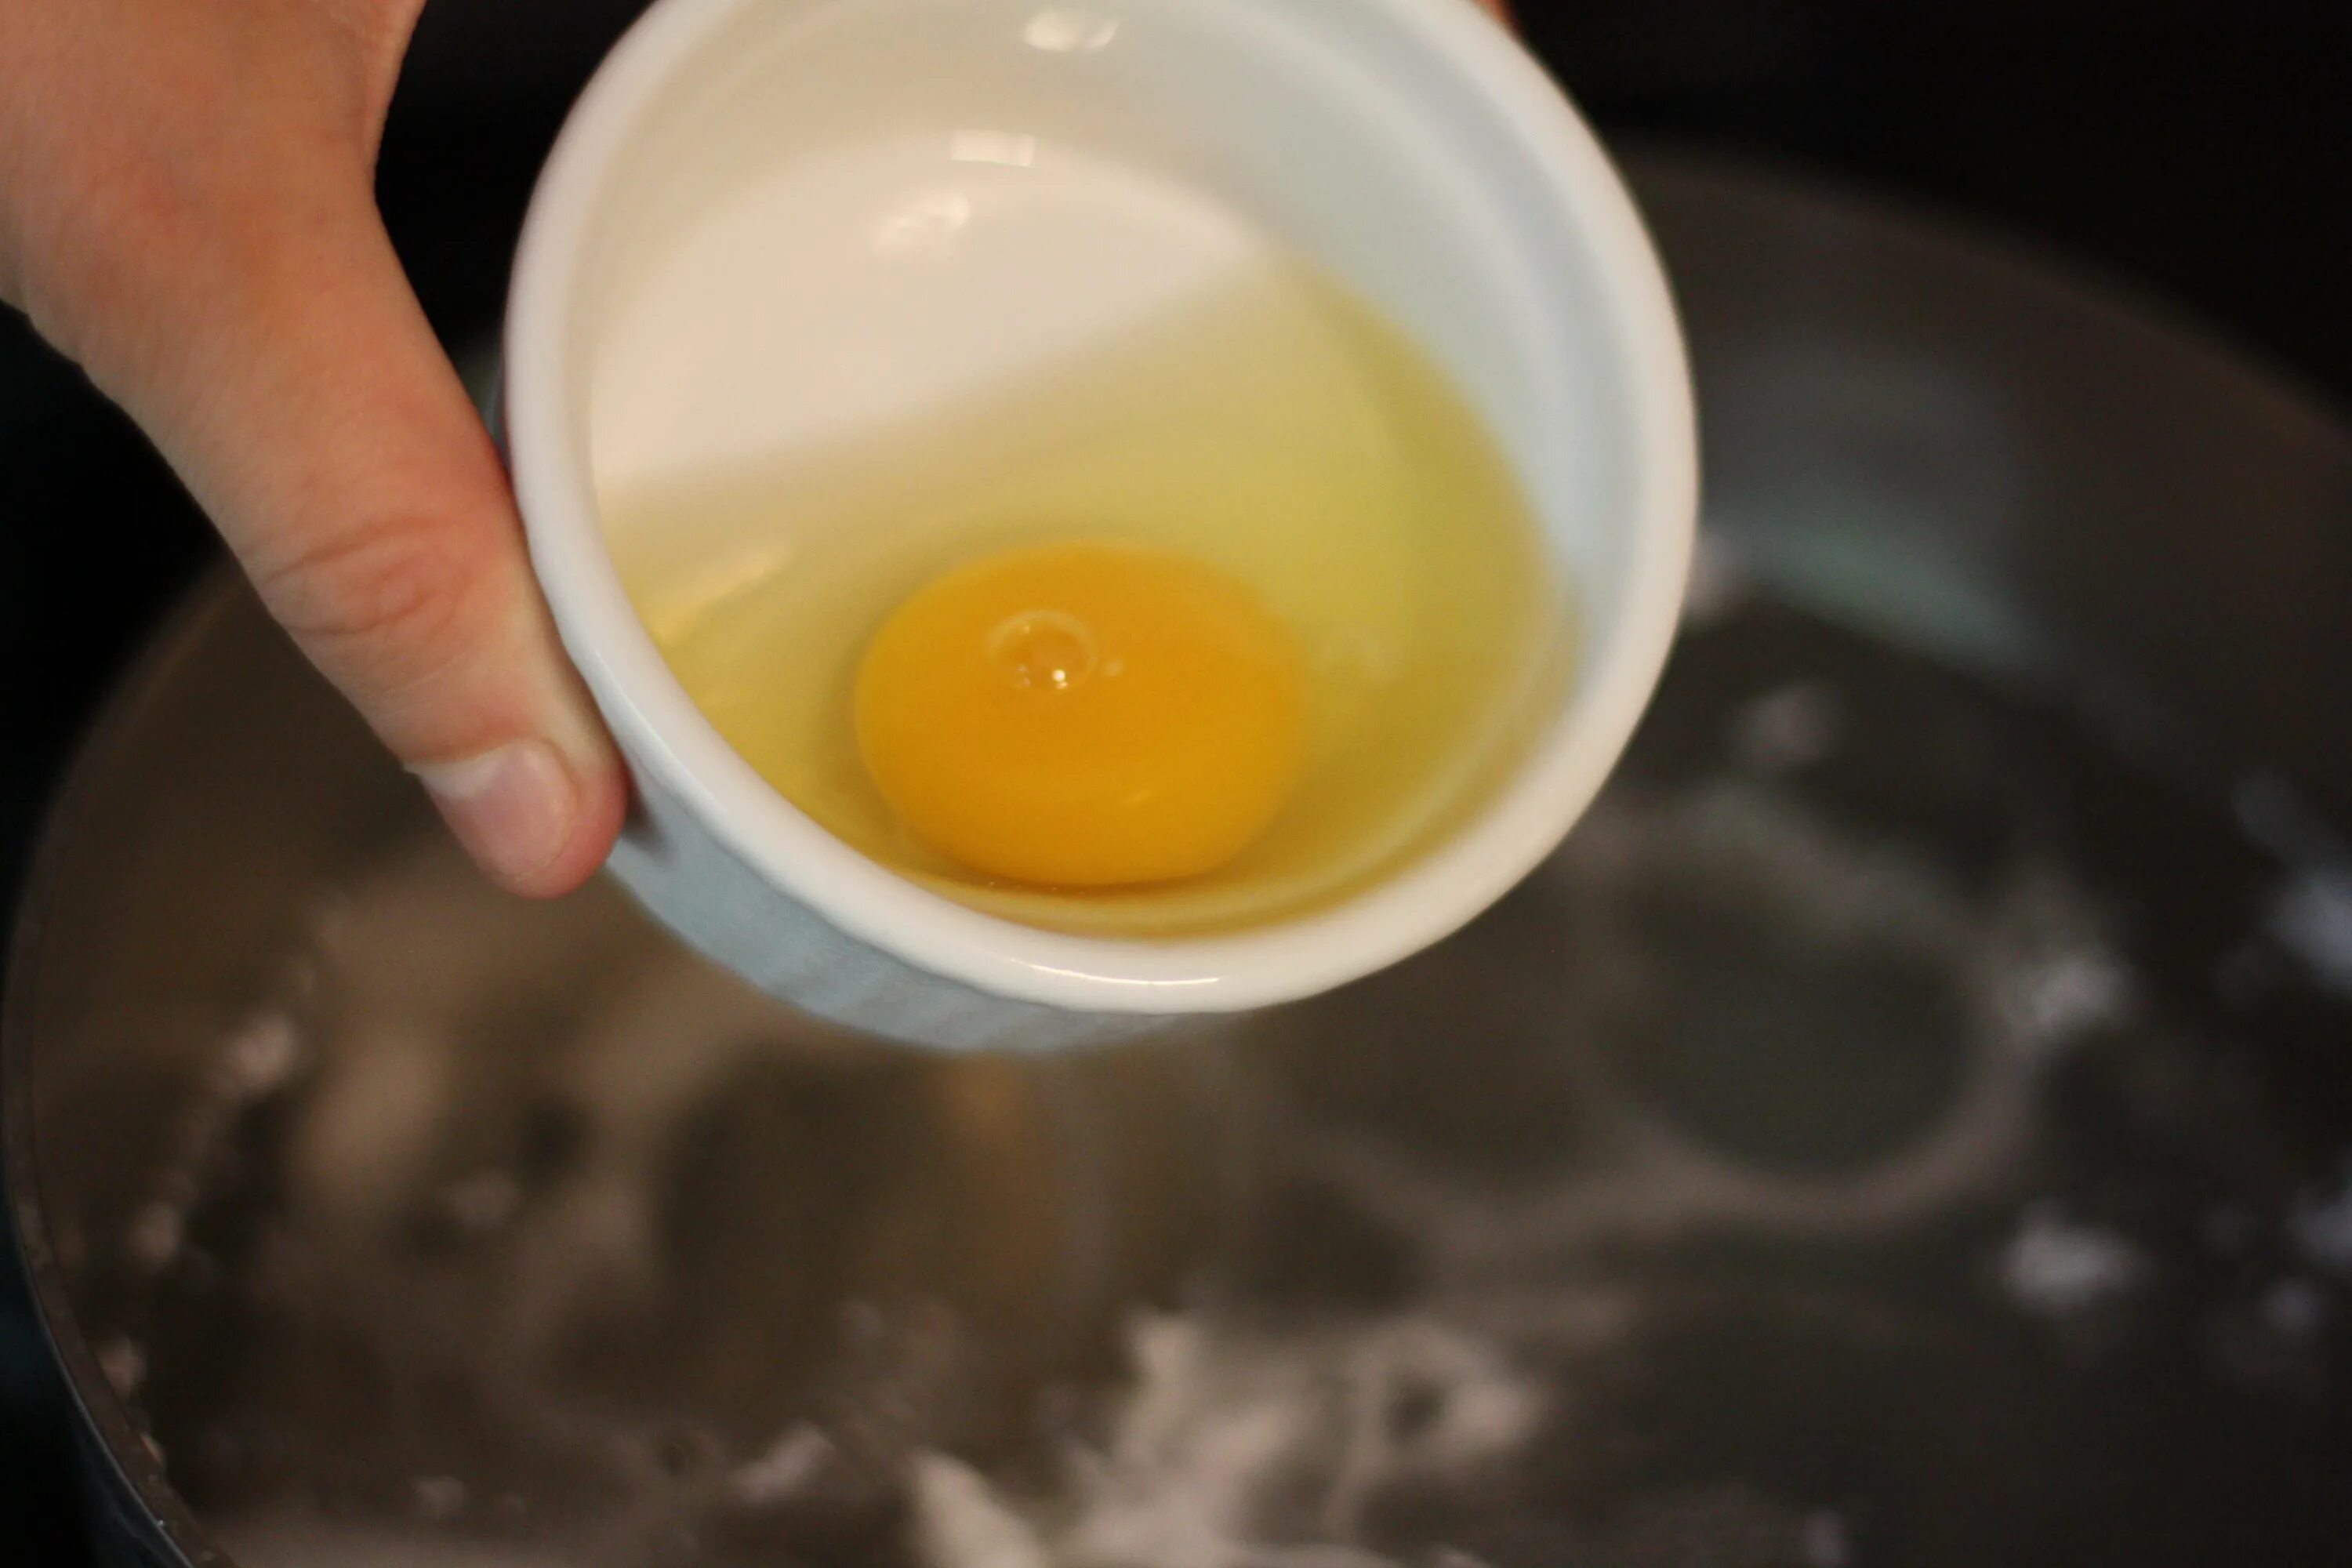 Сколько варить яйцо пашот. Варка яиц пашот. Приготовление яйца пашот пошагово. Способы варки яиц пашот. Ложка для яйца пашот.